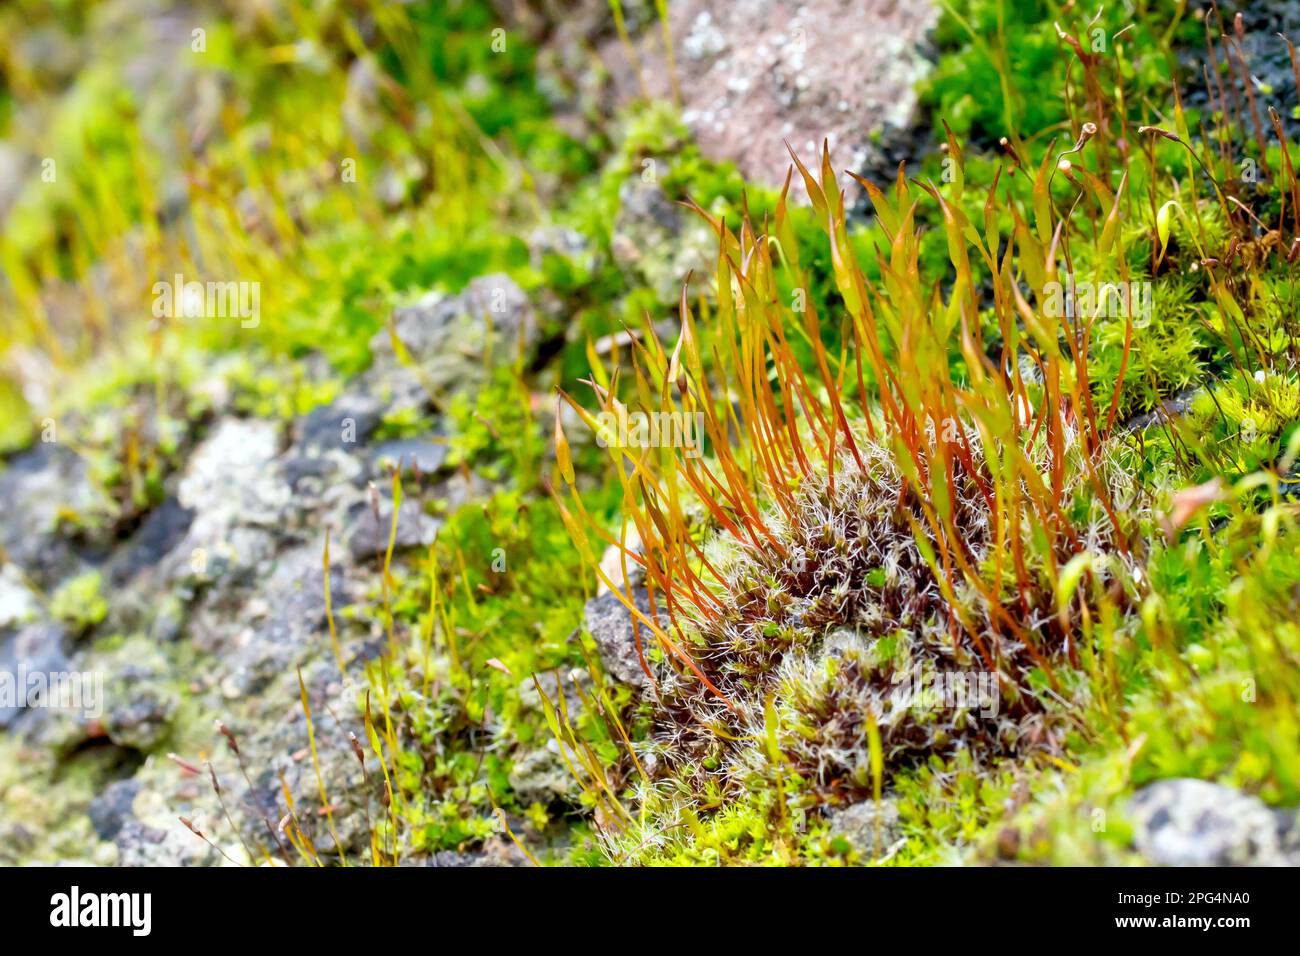 Nahaufnahme der Kapseln, die aus einem Tüpfelchen Moos wachsen, höchstwahrscheinlich Wall Screw-Moos (Tortula muralis), möglicherweise Redshank Moss (Ceratodon purpureus). Stockfoto